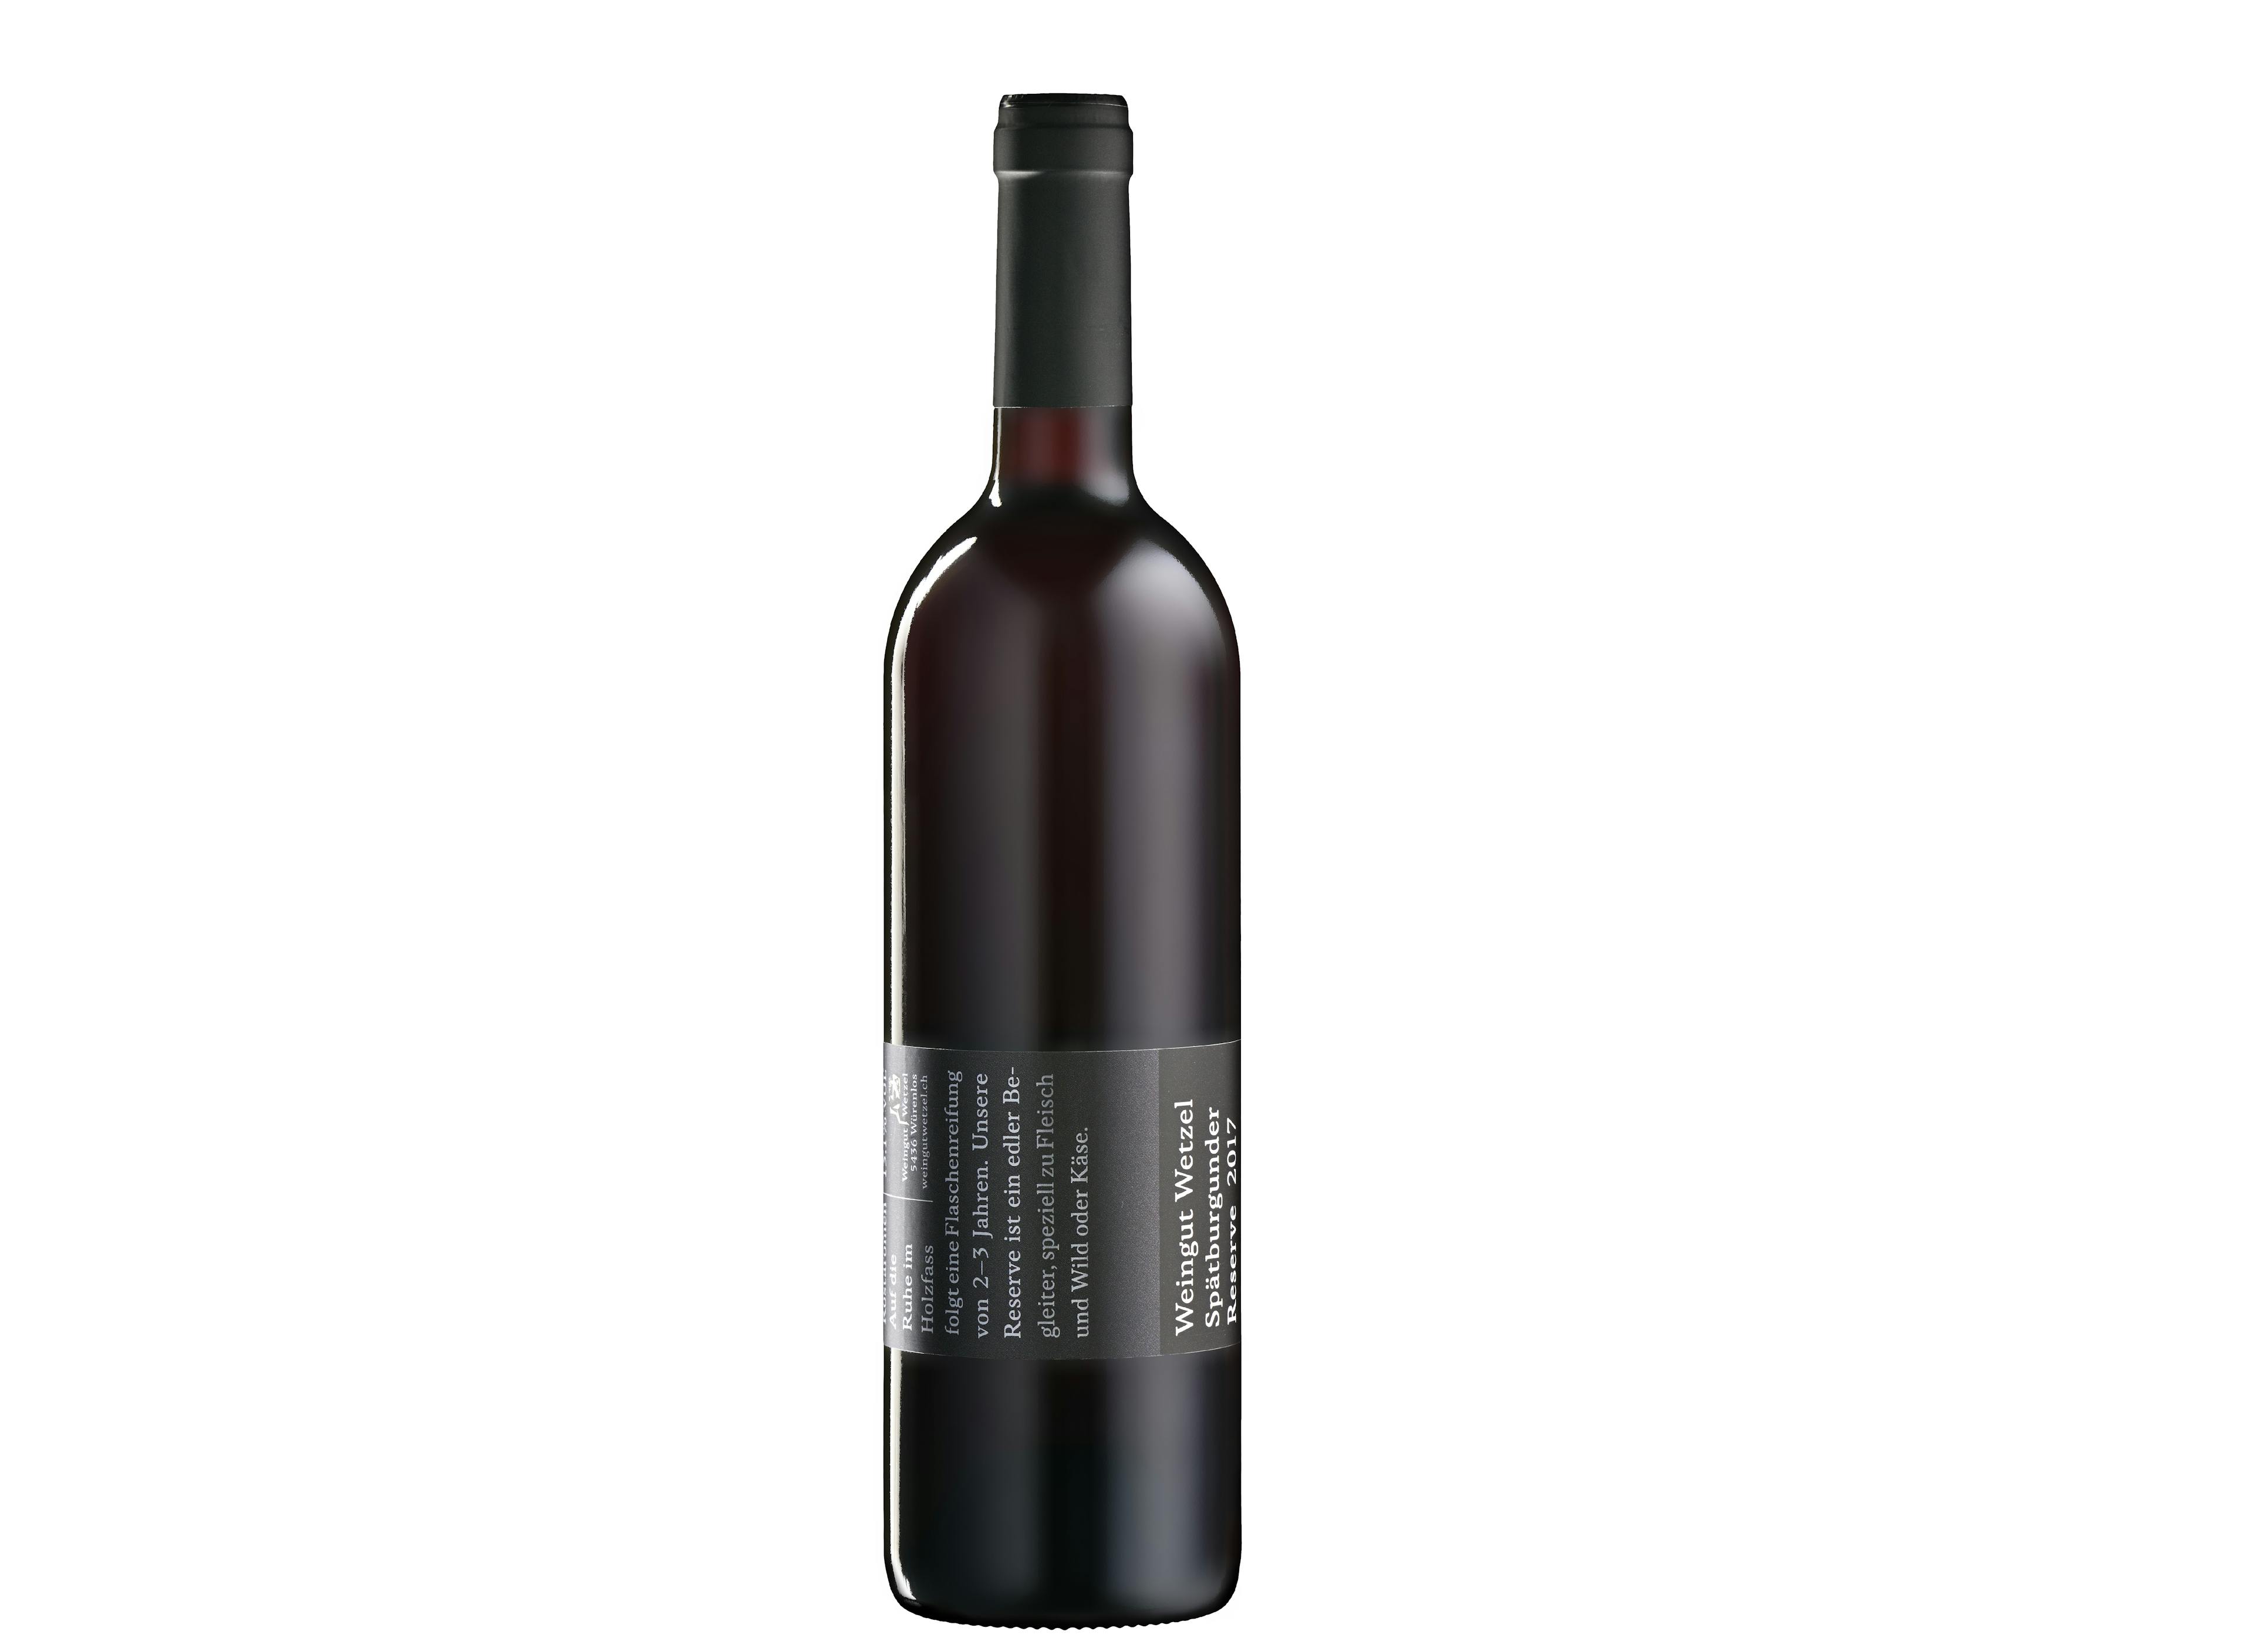 Domaine viticole de réserve Wetzel Pinot Noir, produit artisanal en vente directe en Suisse